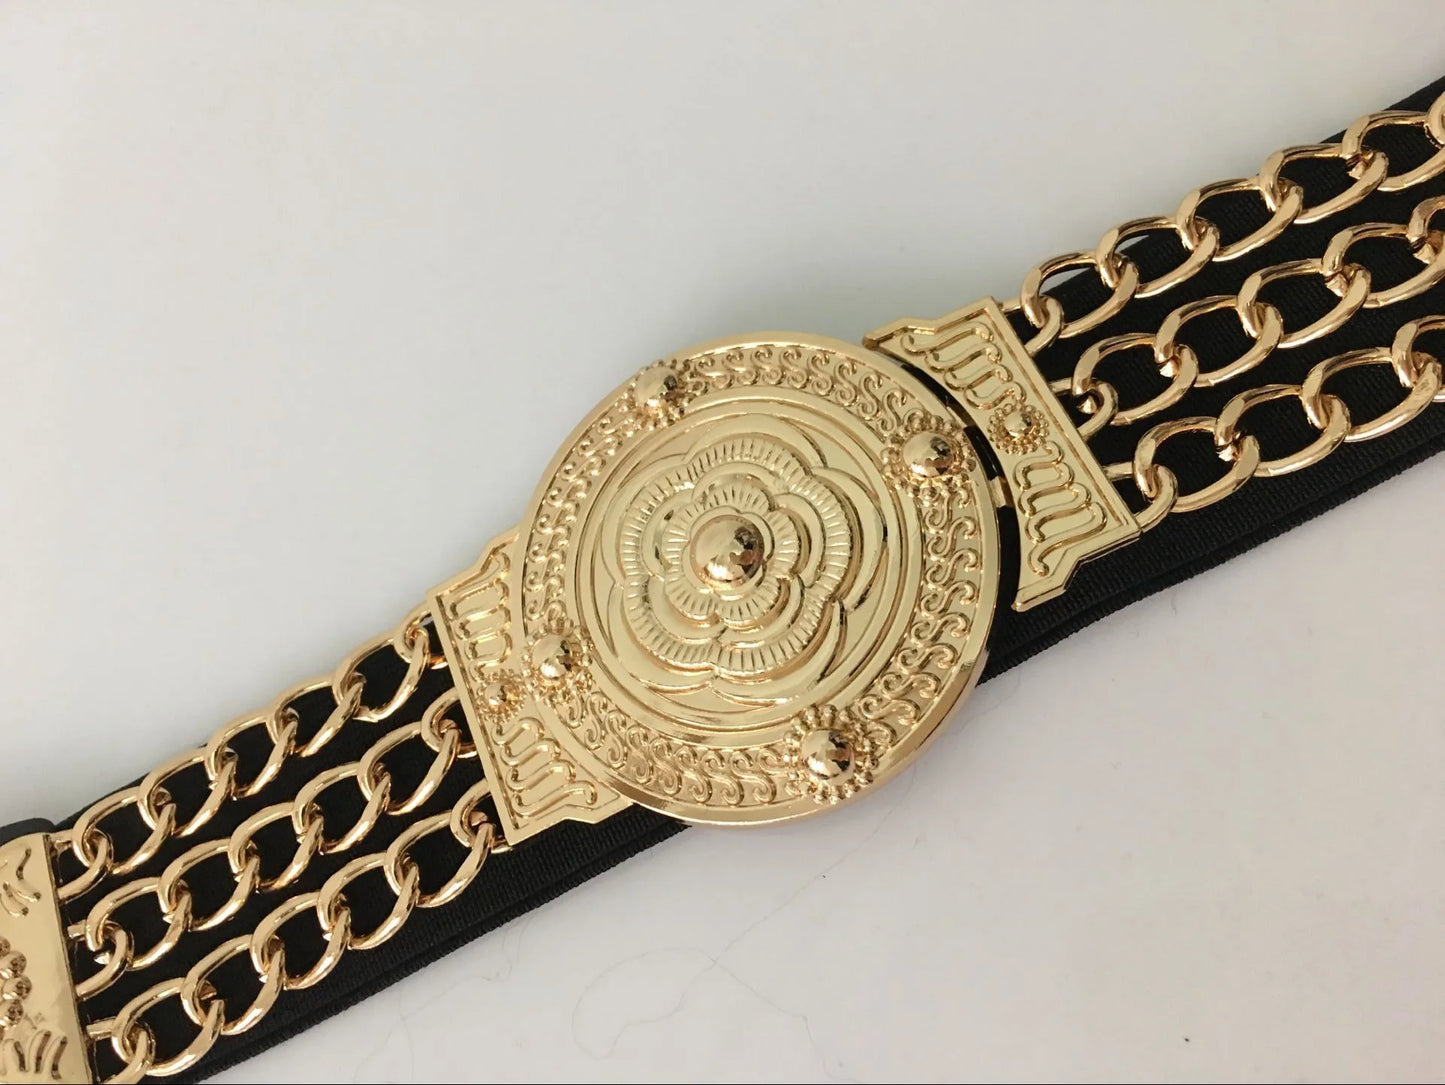 Luxury Chain Style Waist Belt with Flower Emblem Design